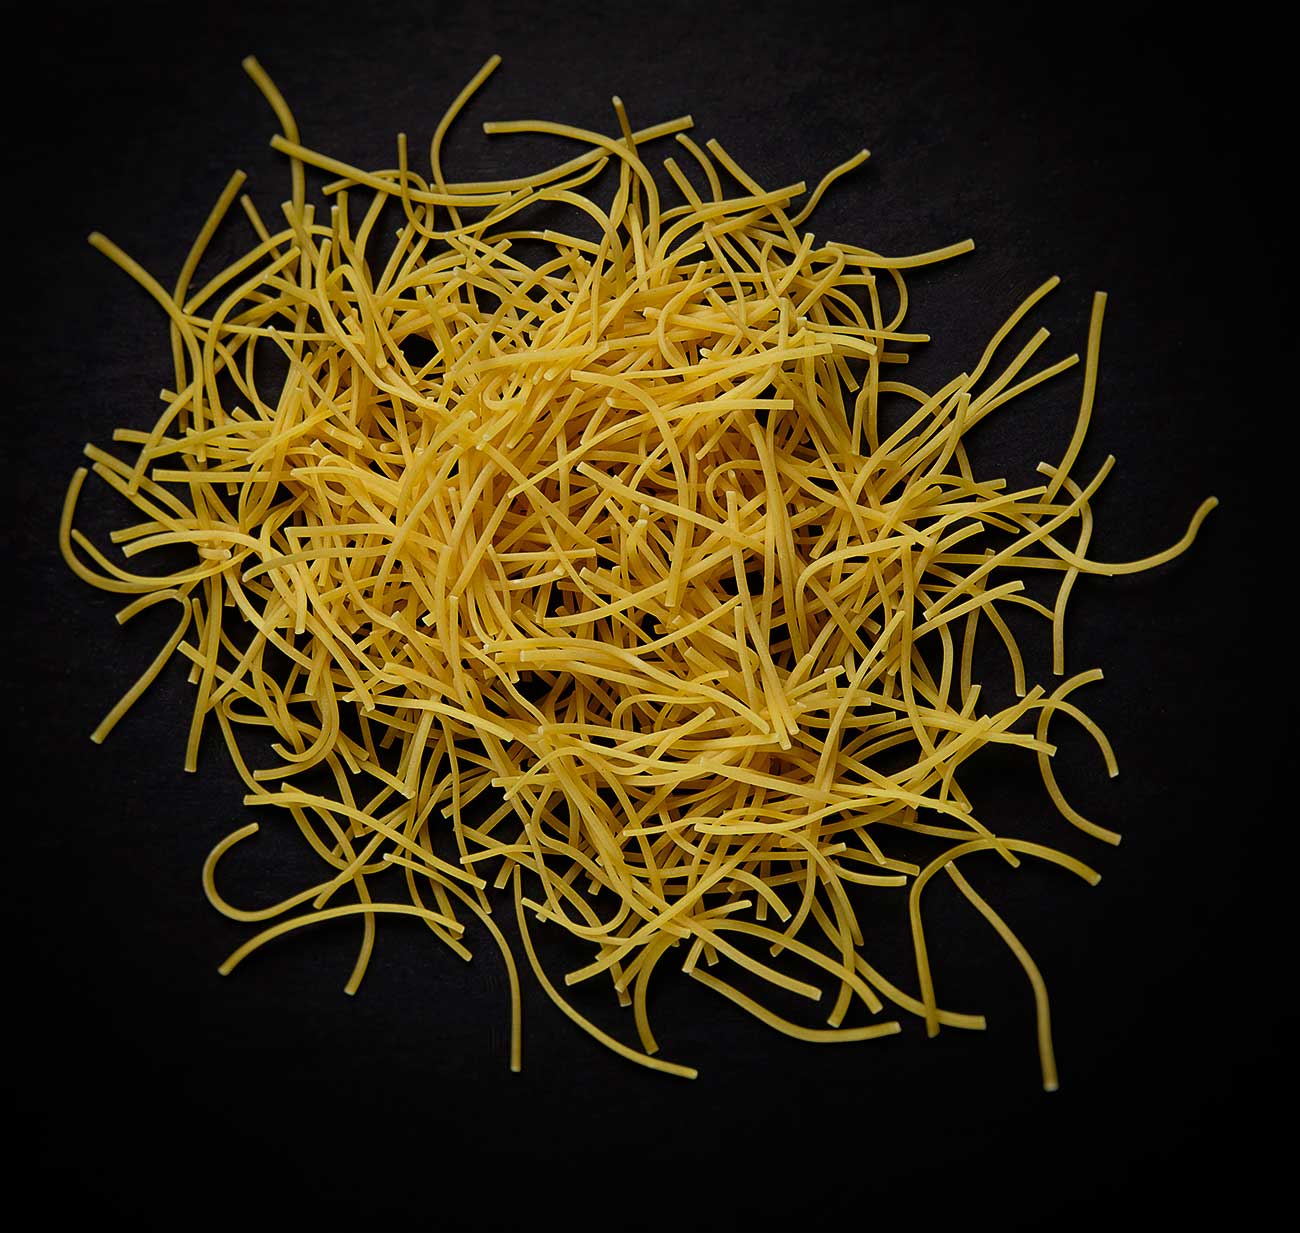 egg noodles ©2016 bret wills